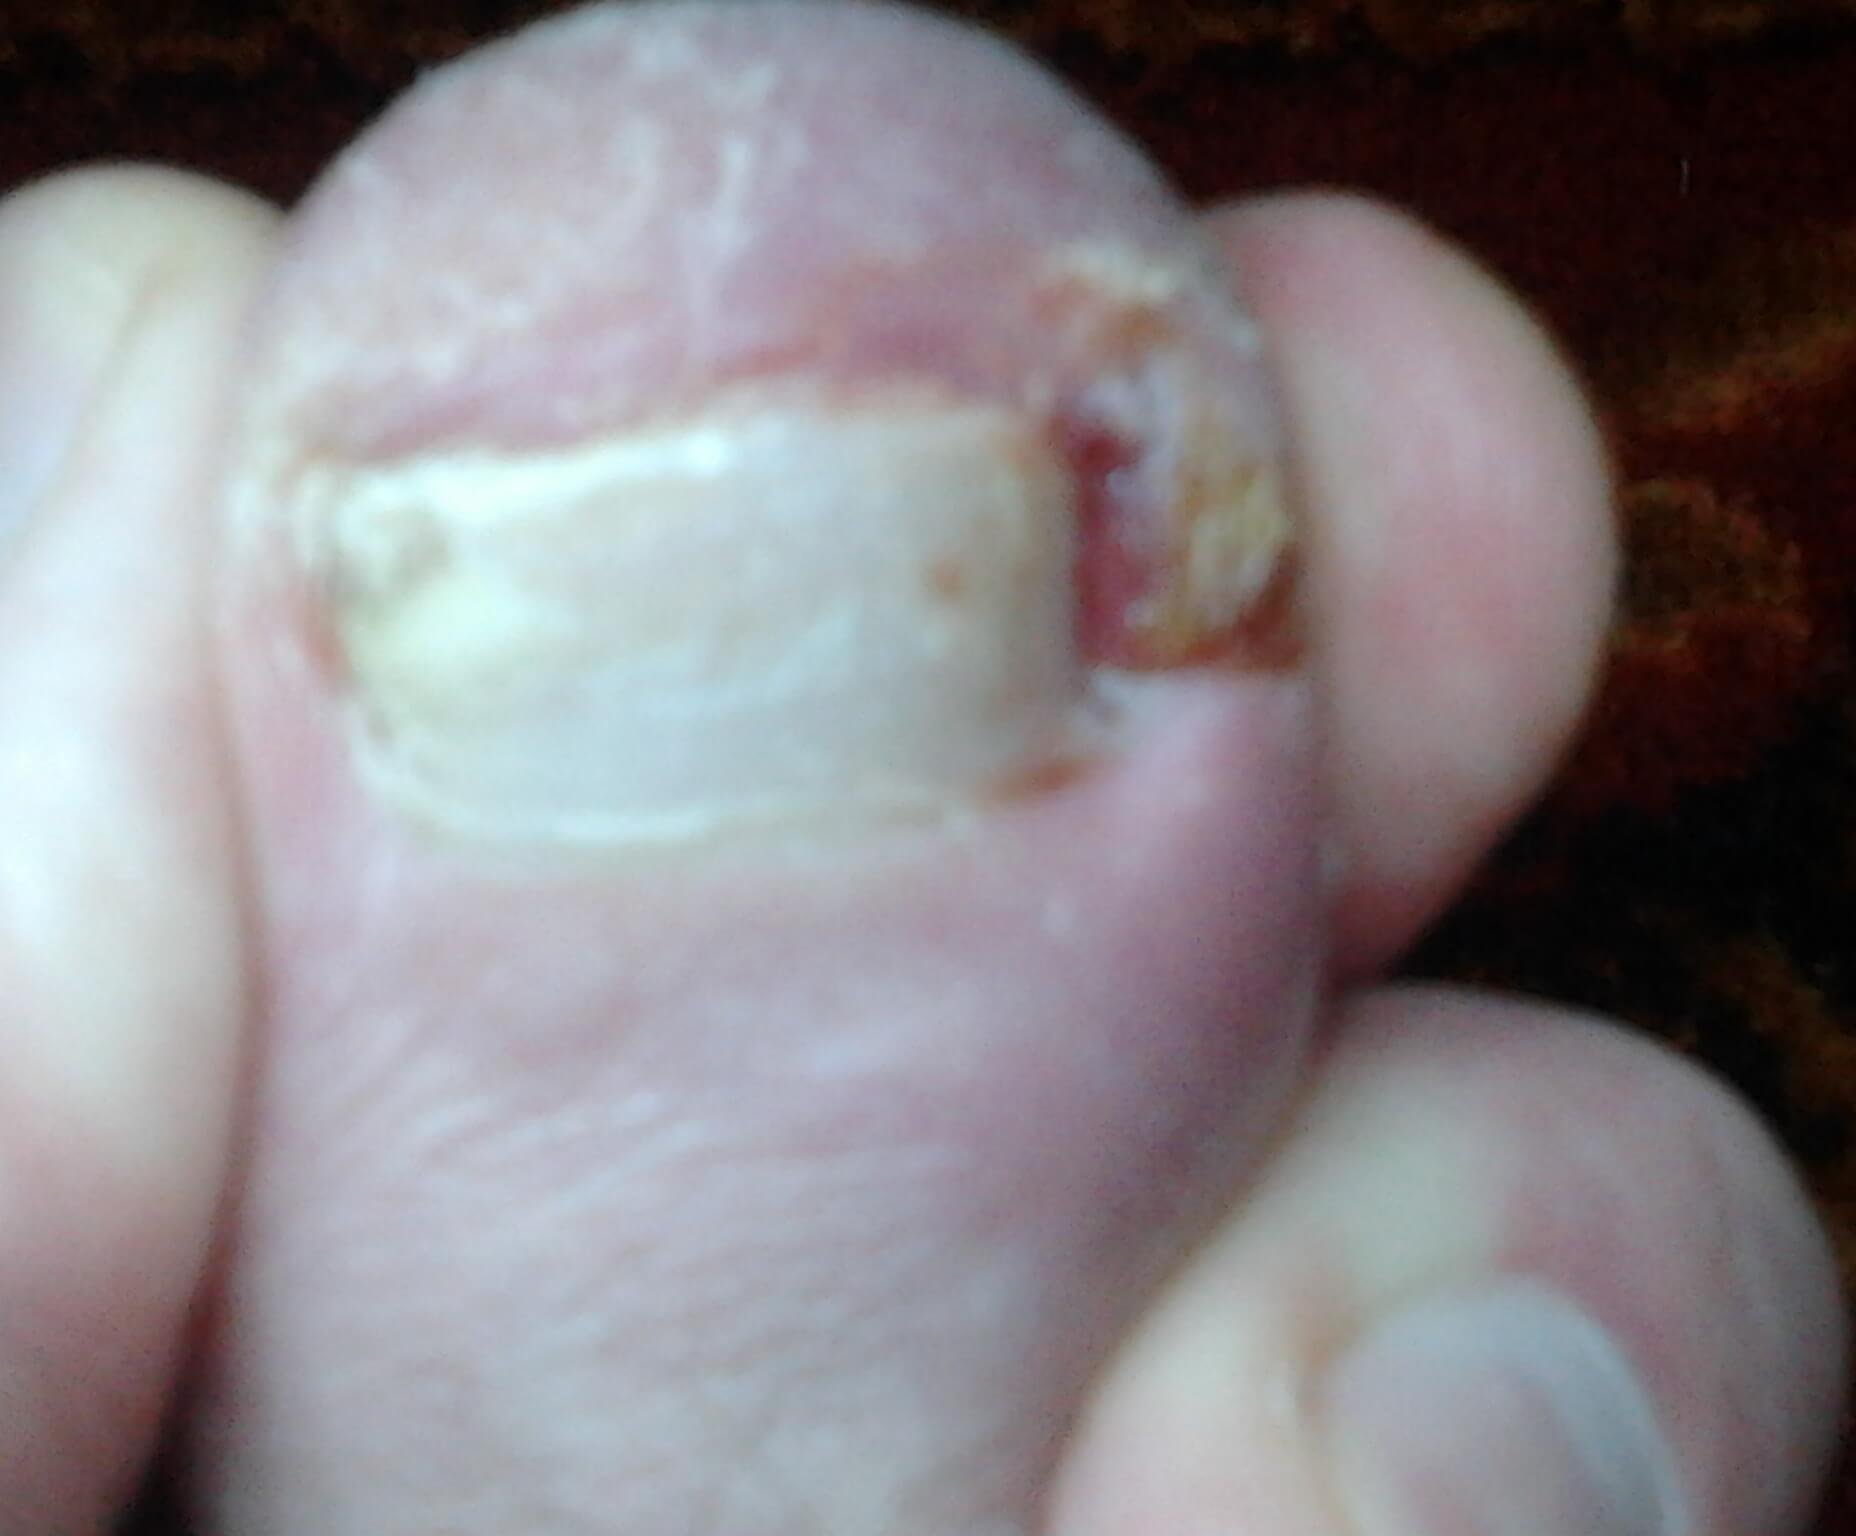 Вросший ноготь на ноге; после прогулки; обрезка ногтя; 14-й день применения медицинского спрея «Ламикон» / image5 / 2018.06.09 / 14:04